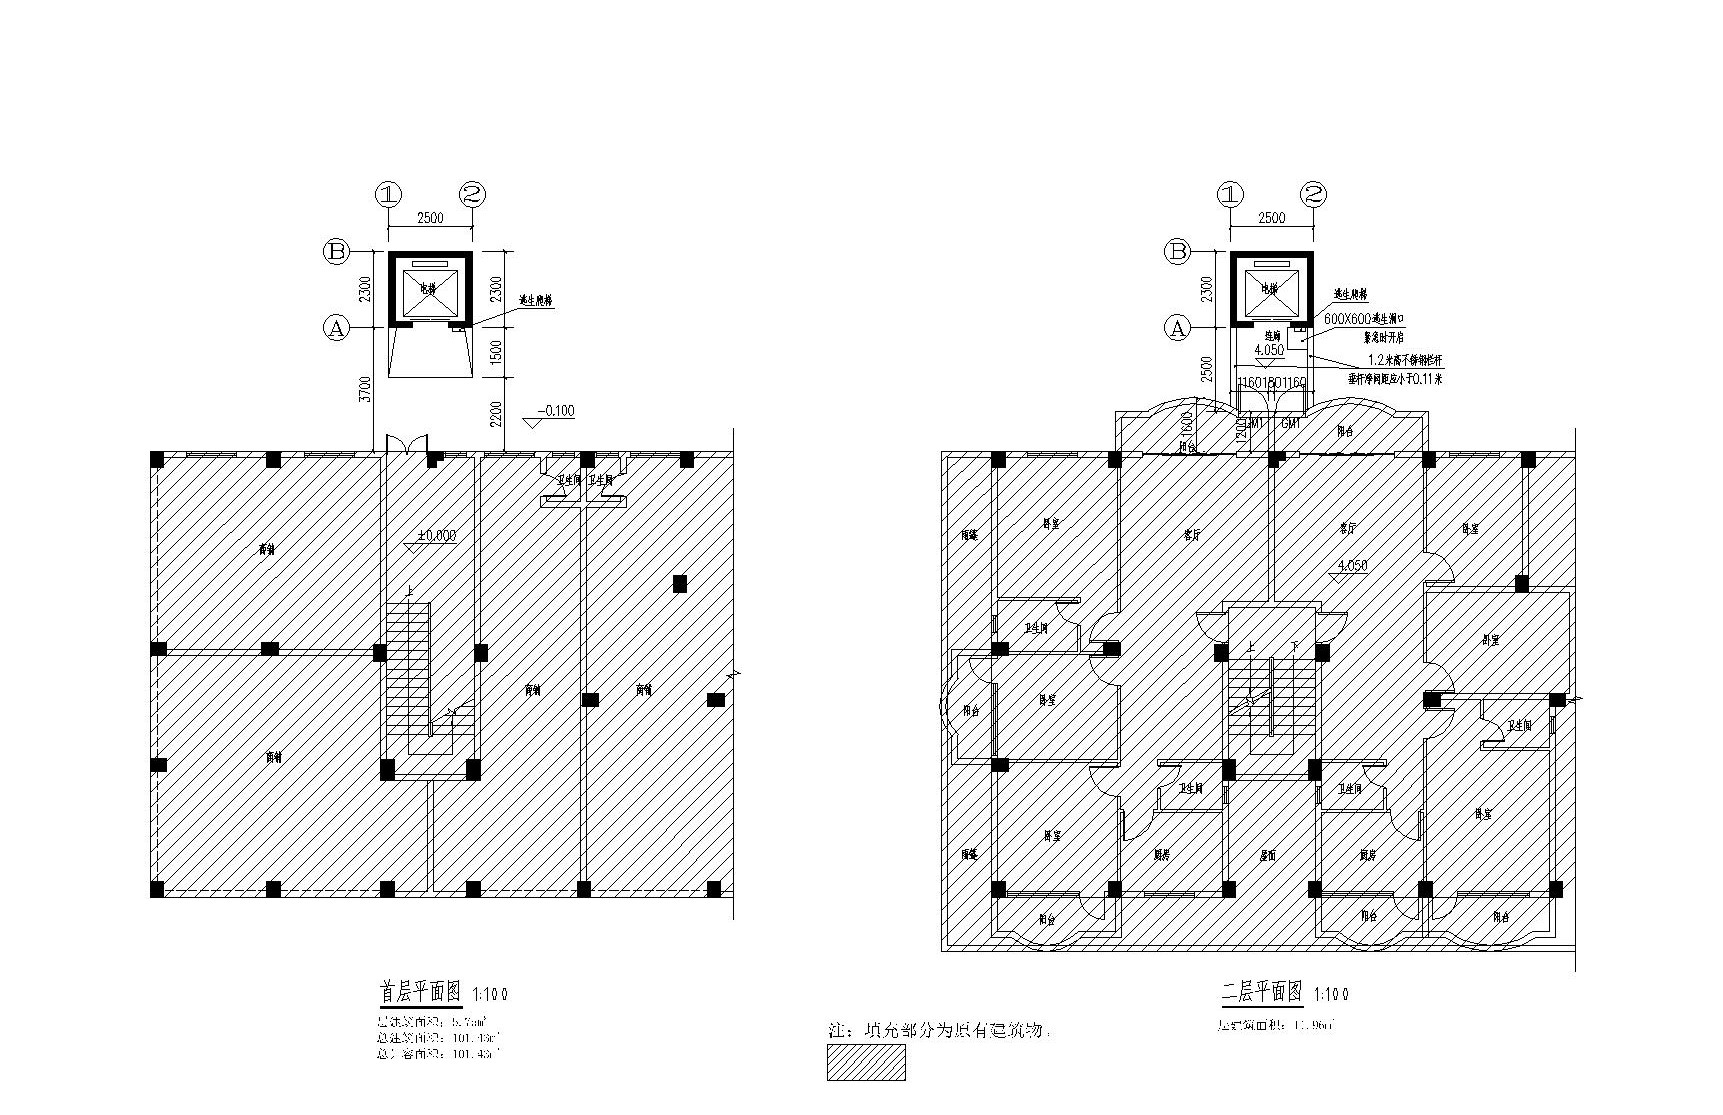 金洲花园H座 (金煌阁) 加装电梯 报建  2023.7.14_t3-Model.jpg